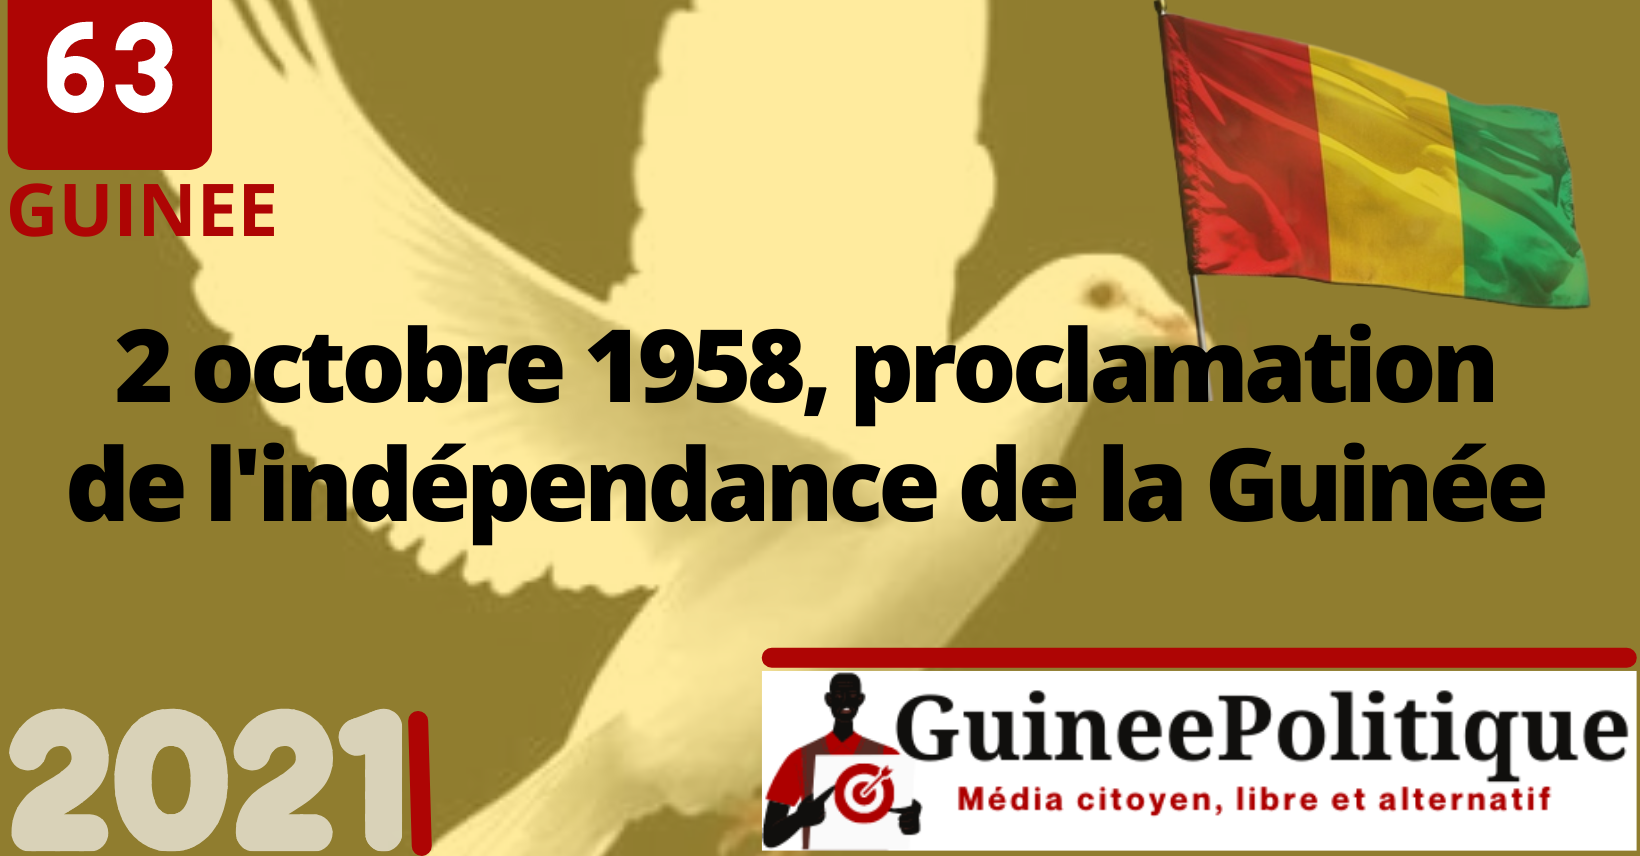 Guinée Conakry - Le drapeau de la Guinée 🇬🇳 Le rouge représente le sang  de tous les martyrs versé pour la lutte contre l'occupation coloniale mais  aussi pour l'indépendance du pays le